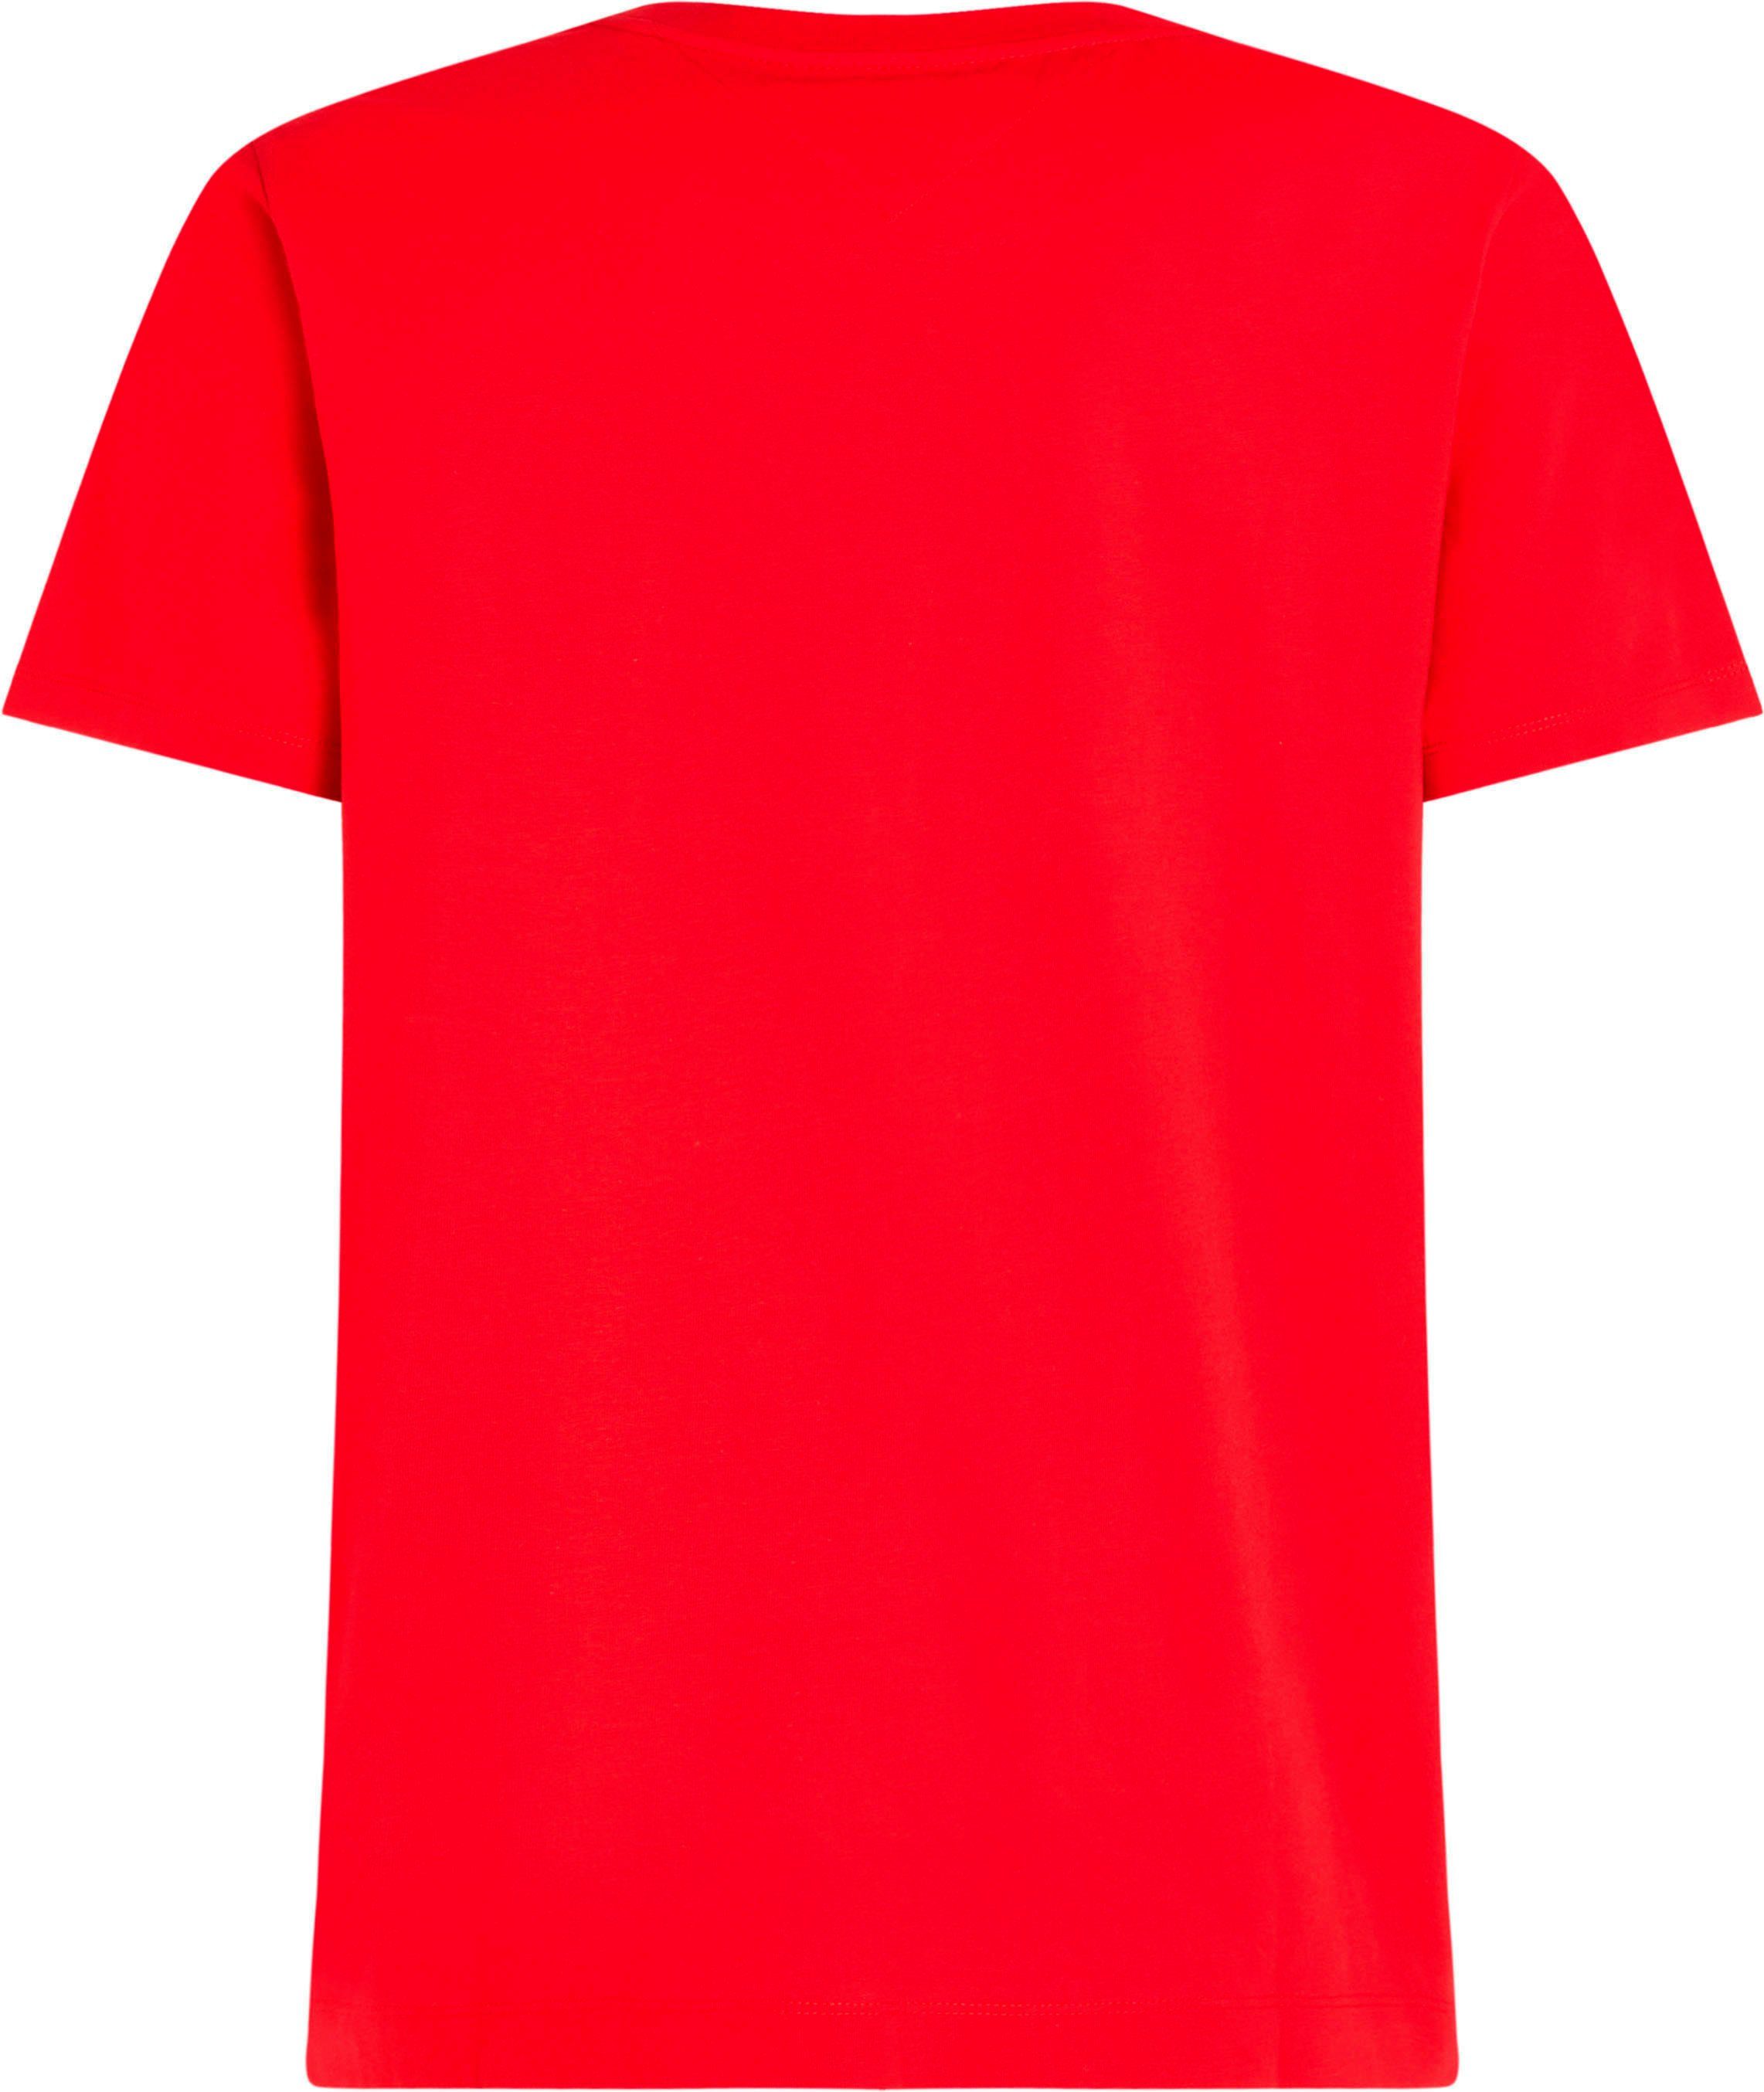 GLOBAL Rundhalsshirt Red TEE mit Hilfiger STRIPE PREP Tommy an in Primary beiden Streifen Ärmeln TH-Farben